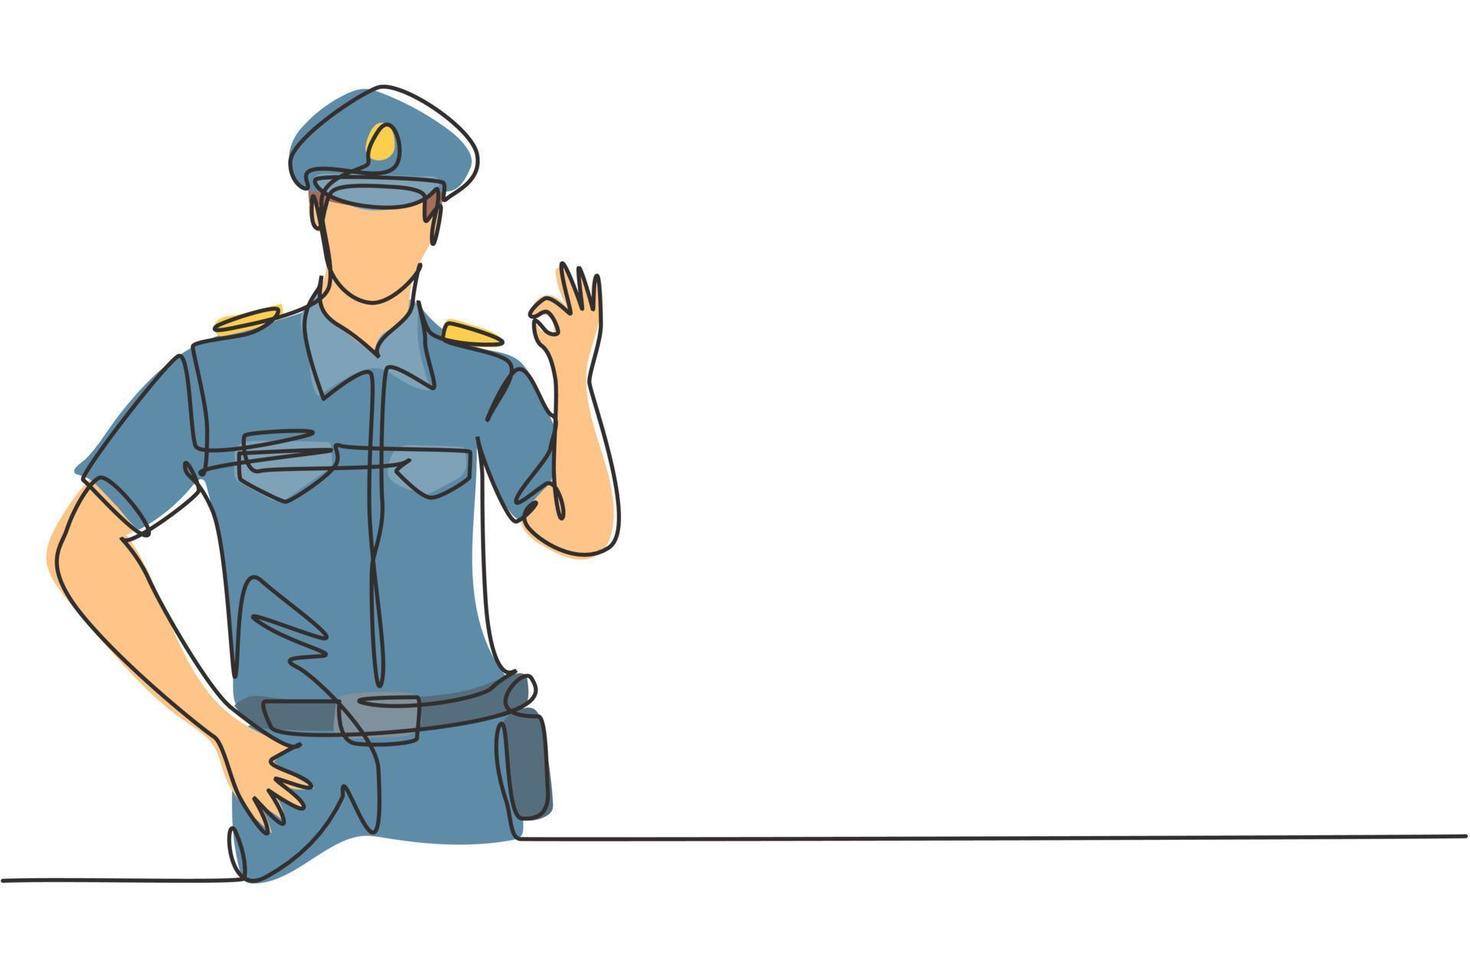 Un policía de dibujo de línea continua con gesto bien y uniforme completo está listo para imponer la disciplina de tráfico en la carretera. patrulla de reserva. Ilustración de vector de diseño gráfico de dibujo de una línea dinámica